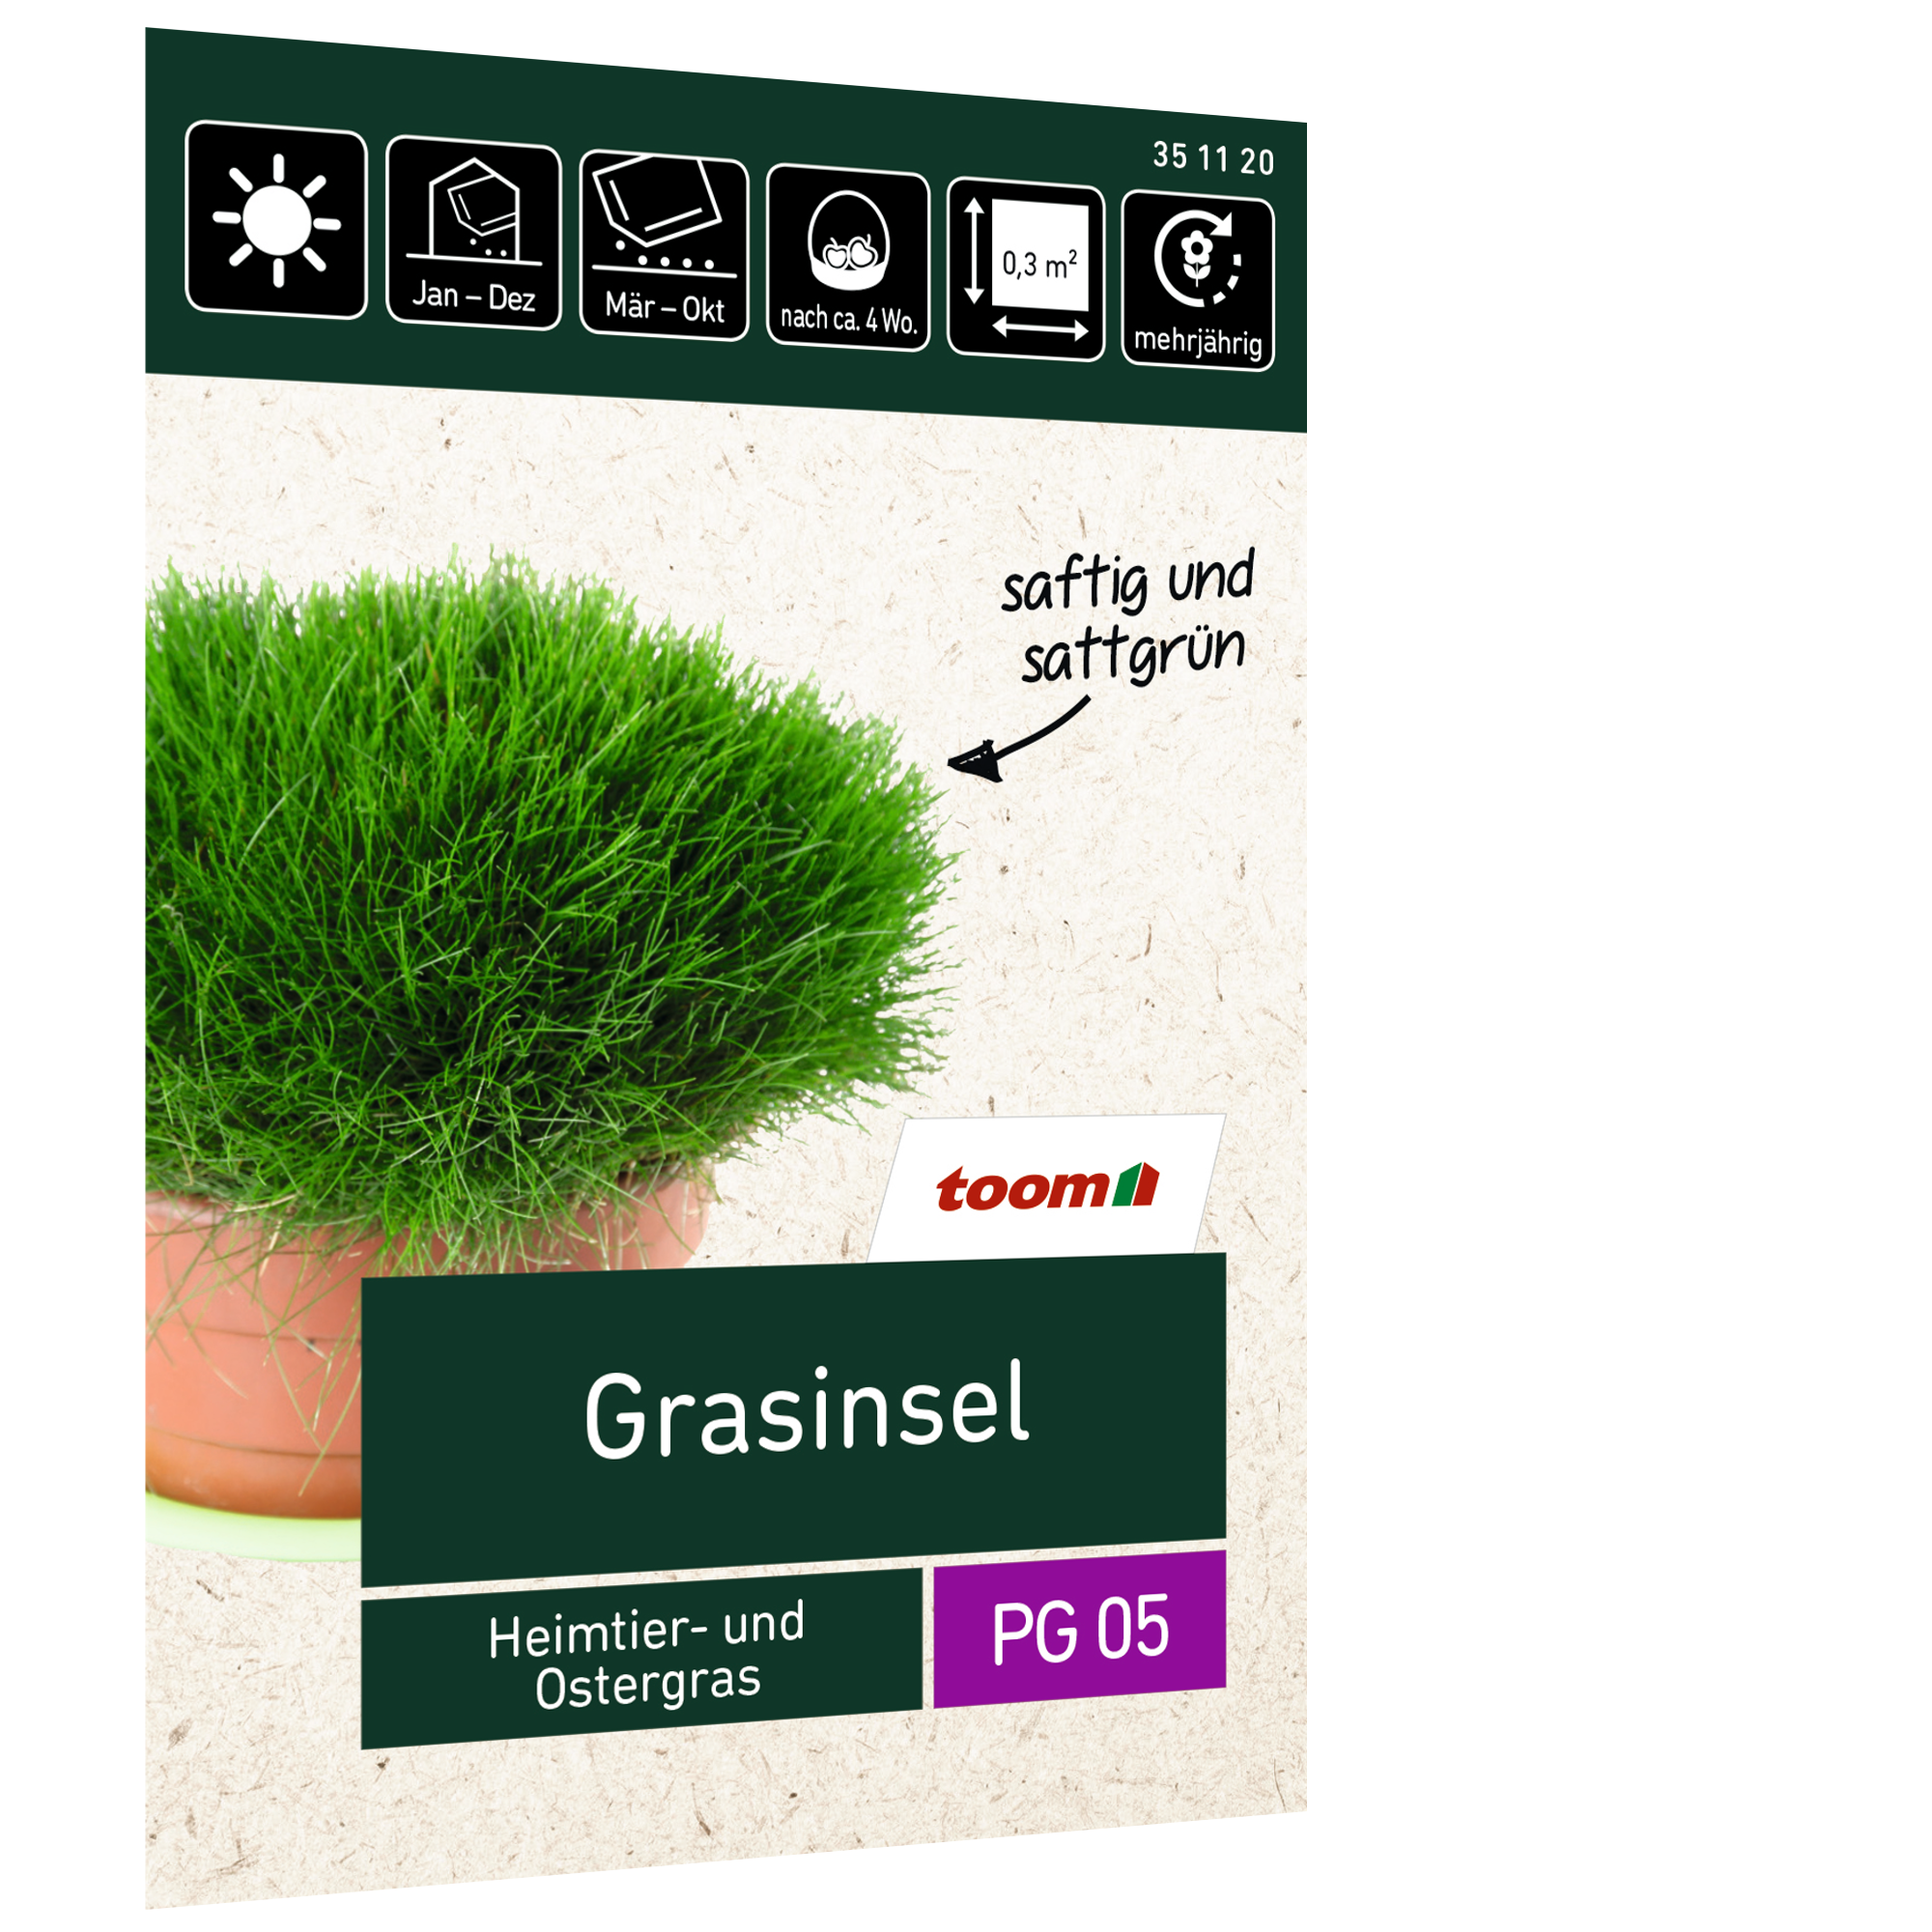 Grasinsel 'Heimtier- und Ostergras' 10 g + product picture